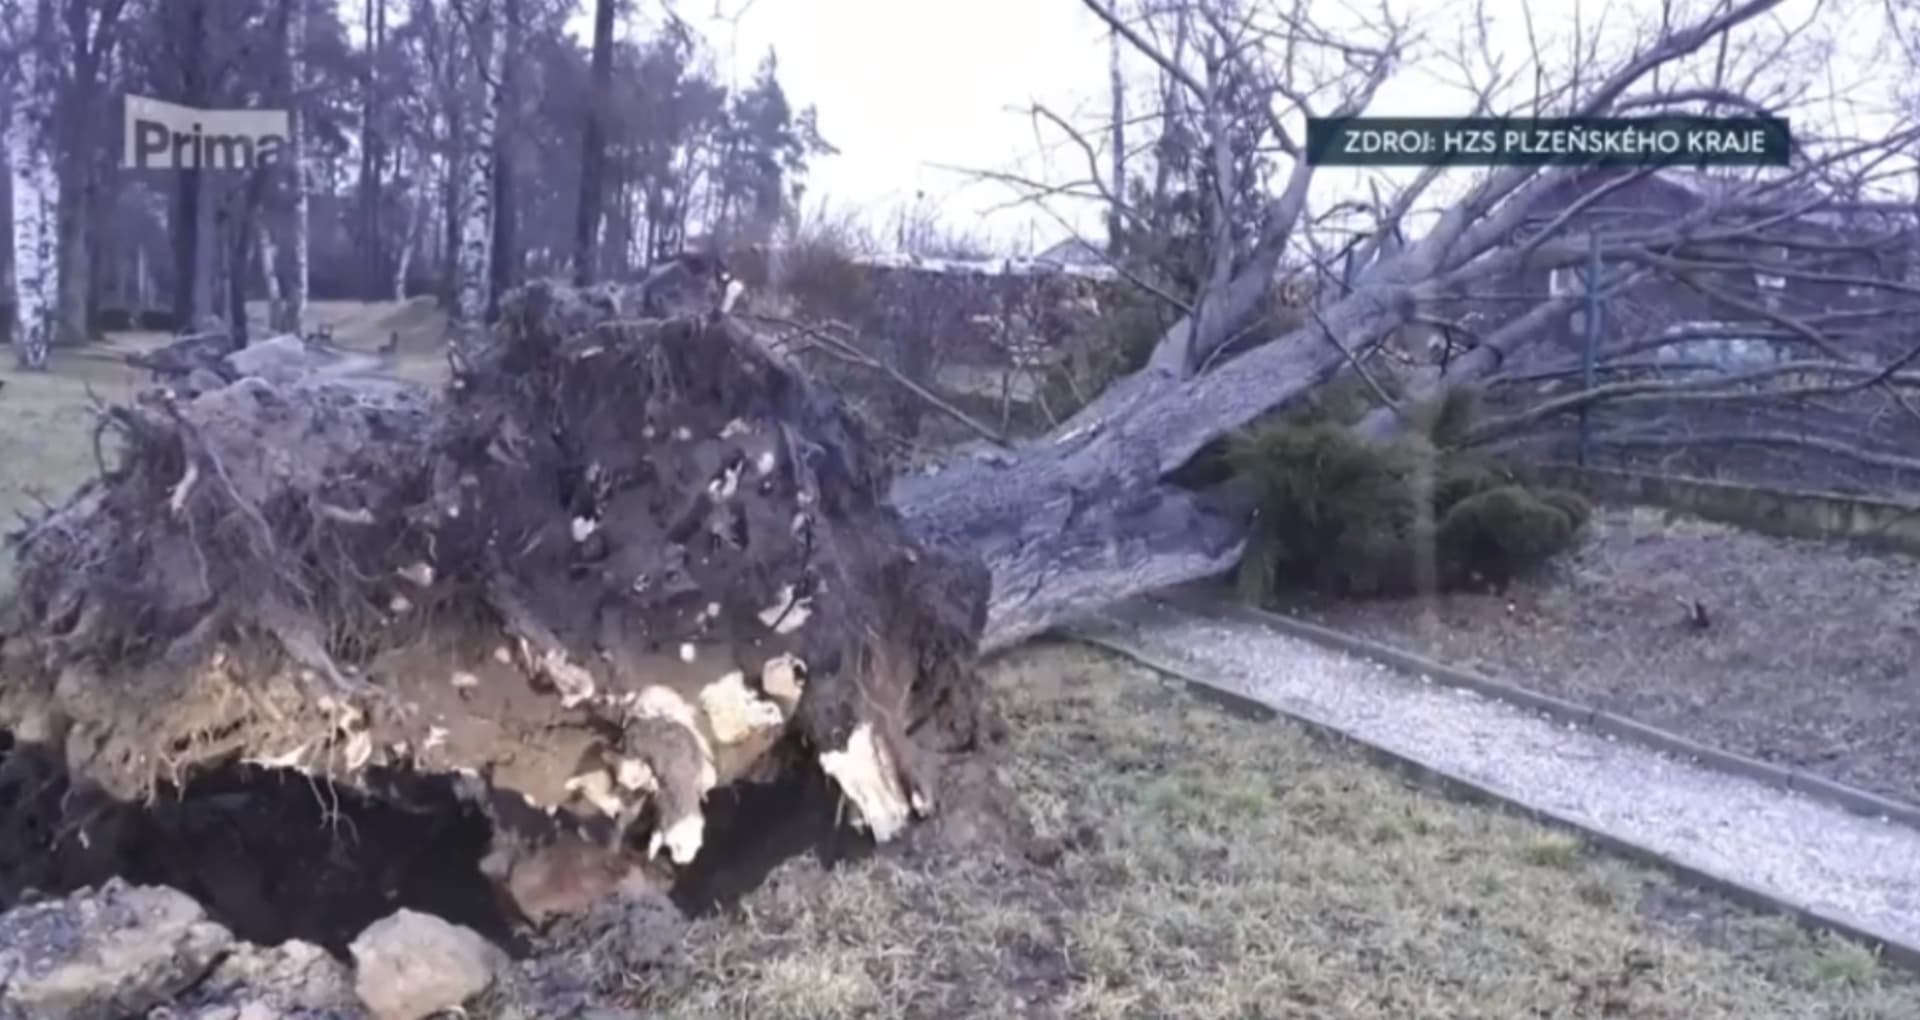 Vyvrácený strom